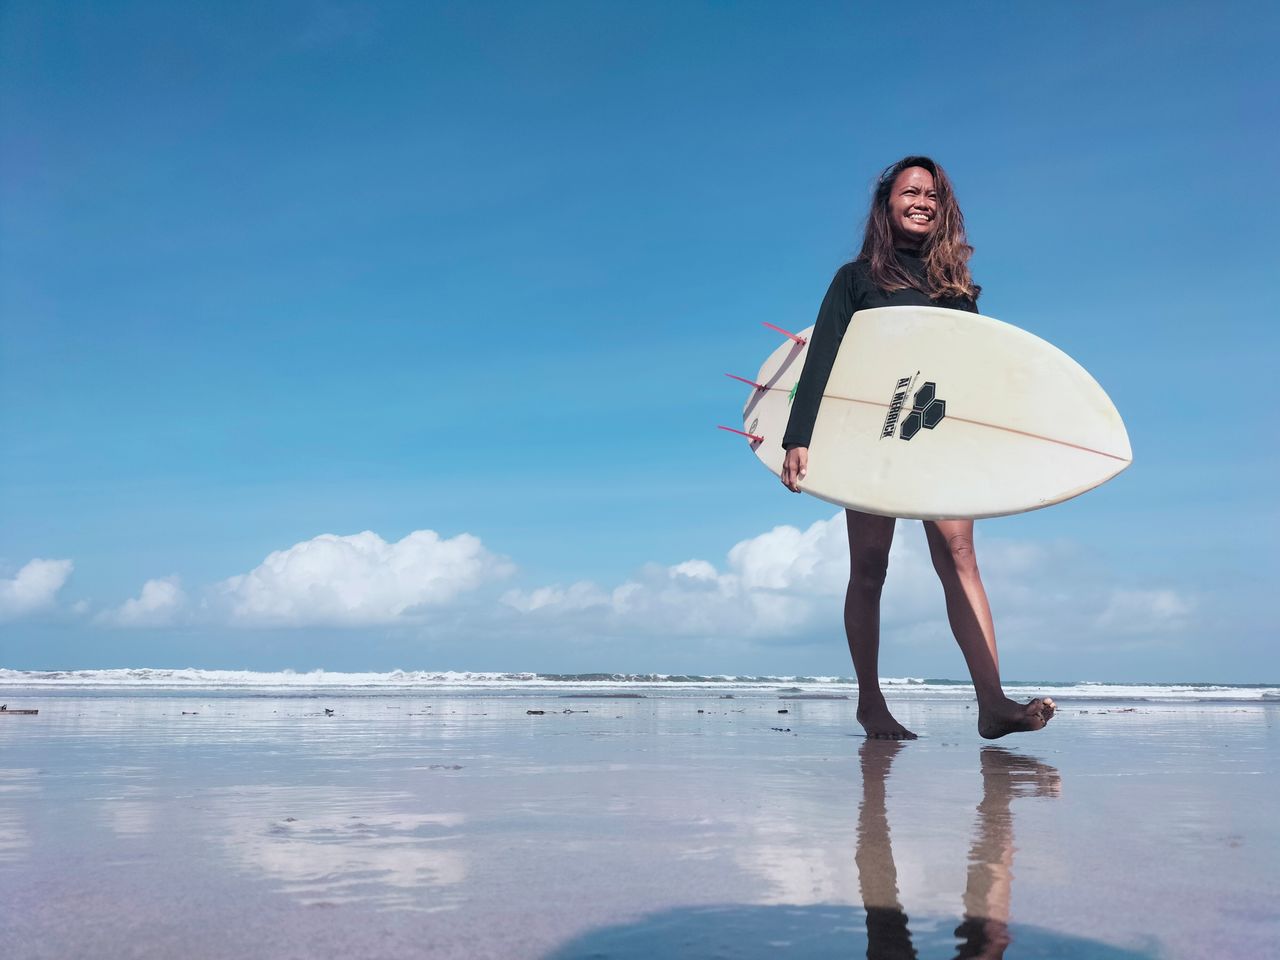 Foto de Halfia Lando, dueña de una escuela de surf, posando con una tabla en la playa de Kuta 
Oct 12, 2021. REUTERS/Sultan Anshori
PROHIBIDA SU REVENTA O SU USO COMO ARCHIVO